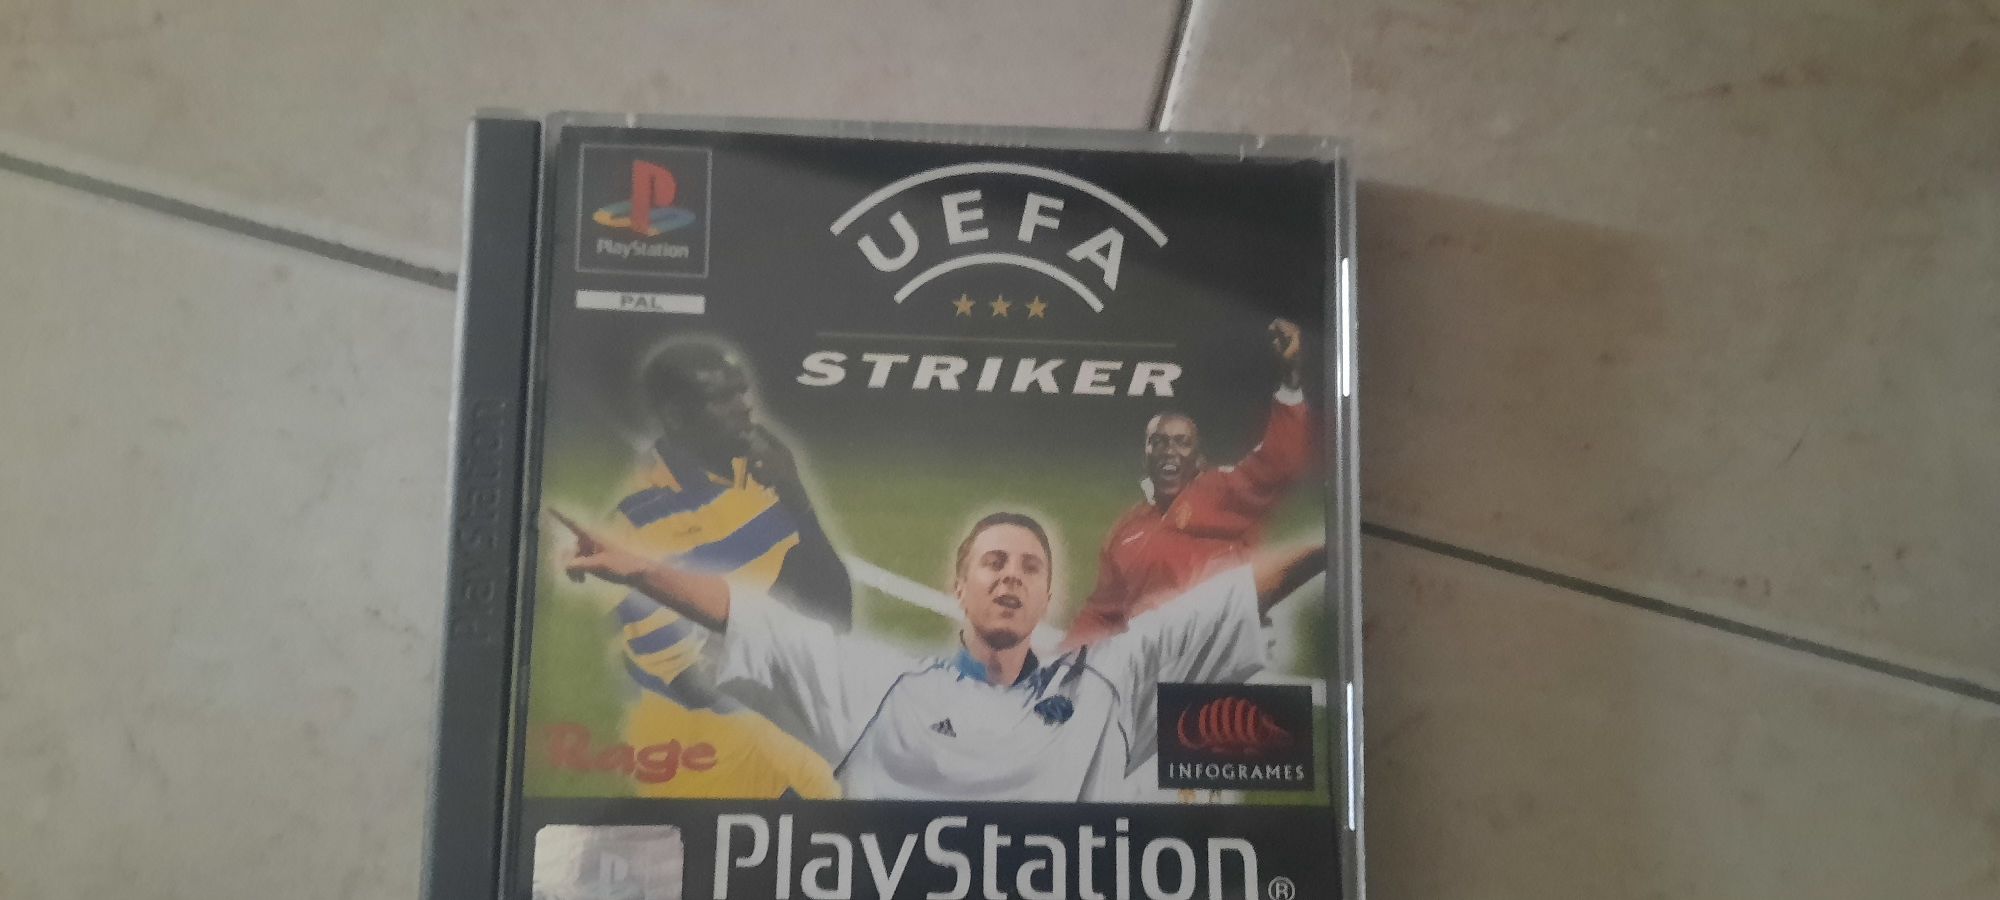 UEFA striker ps1